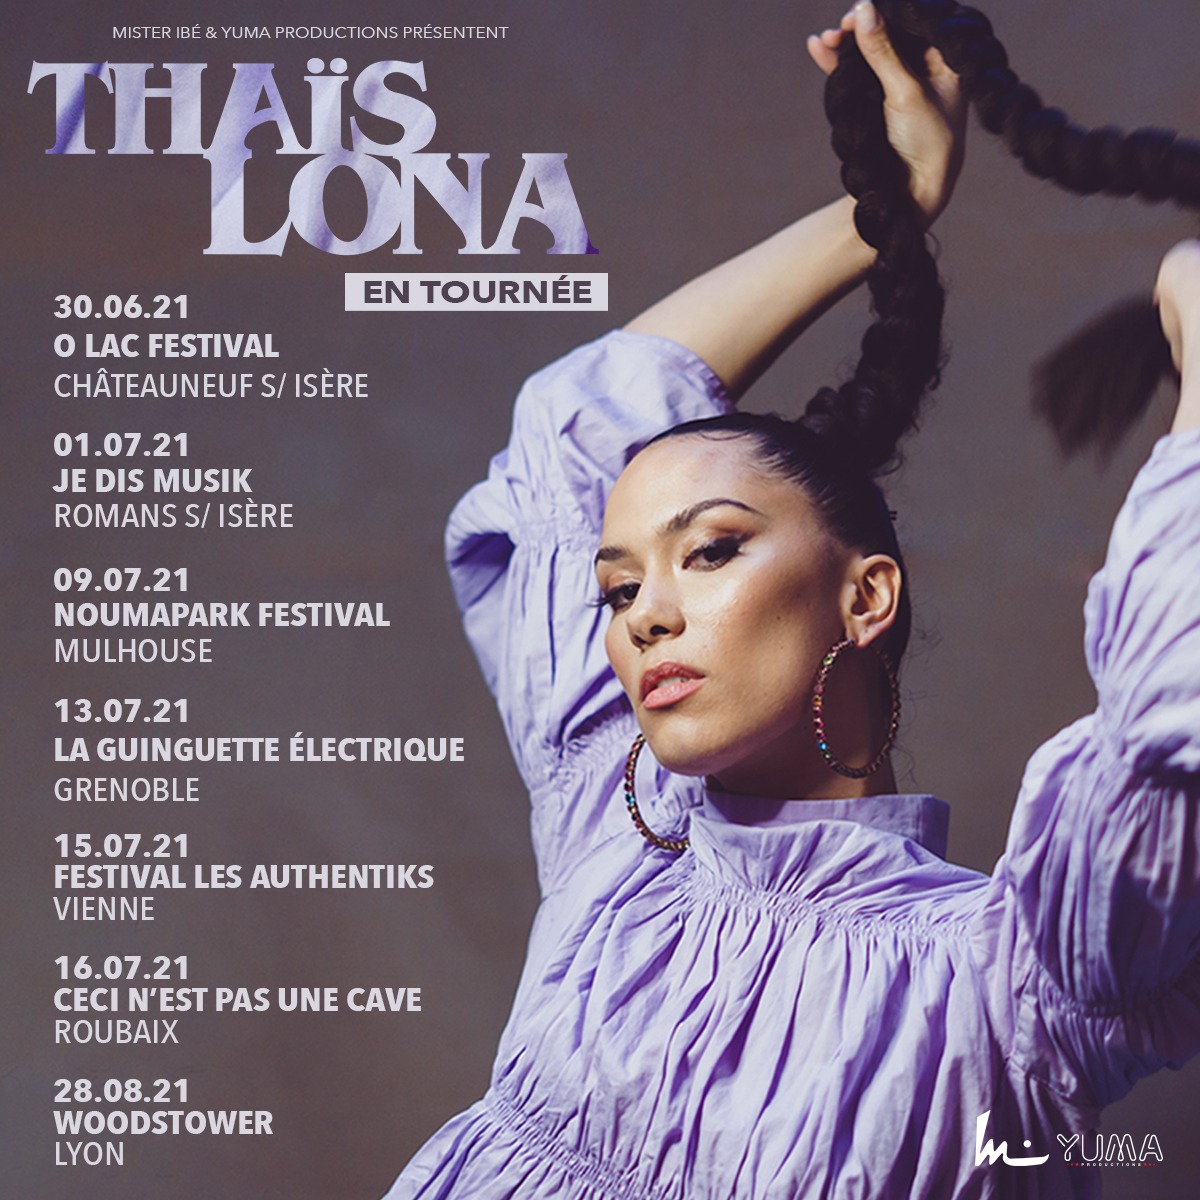 Couverture du single "Allure" de Thaïs Lona